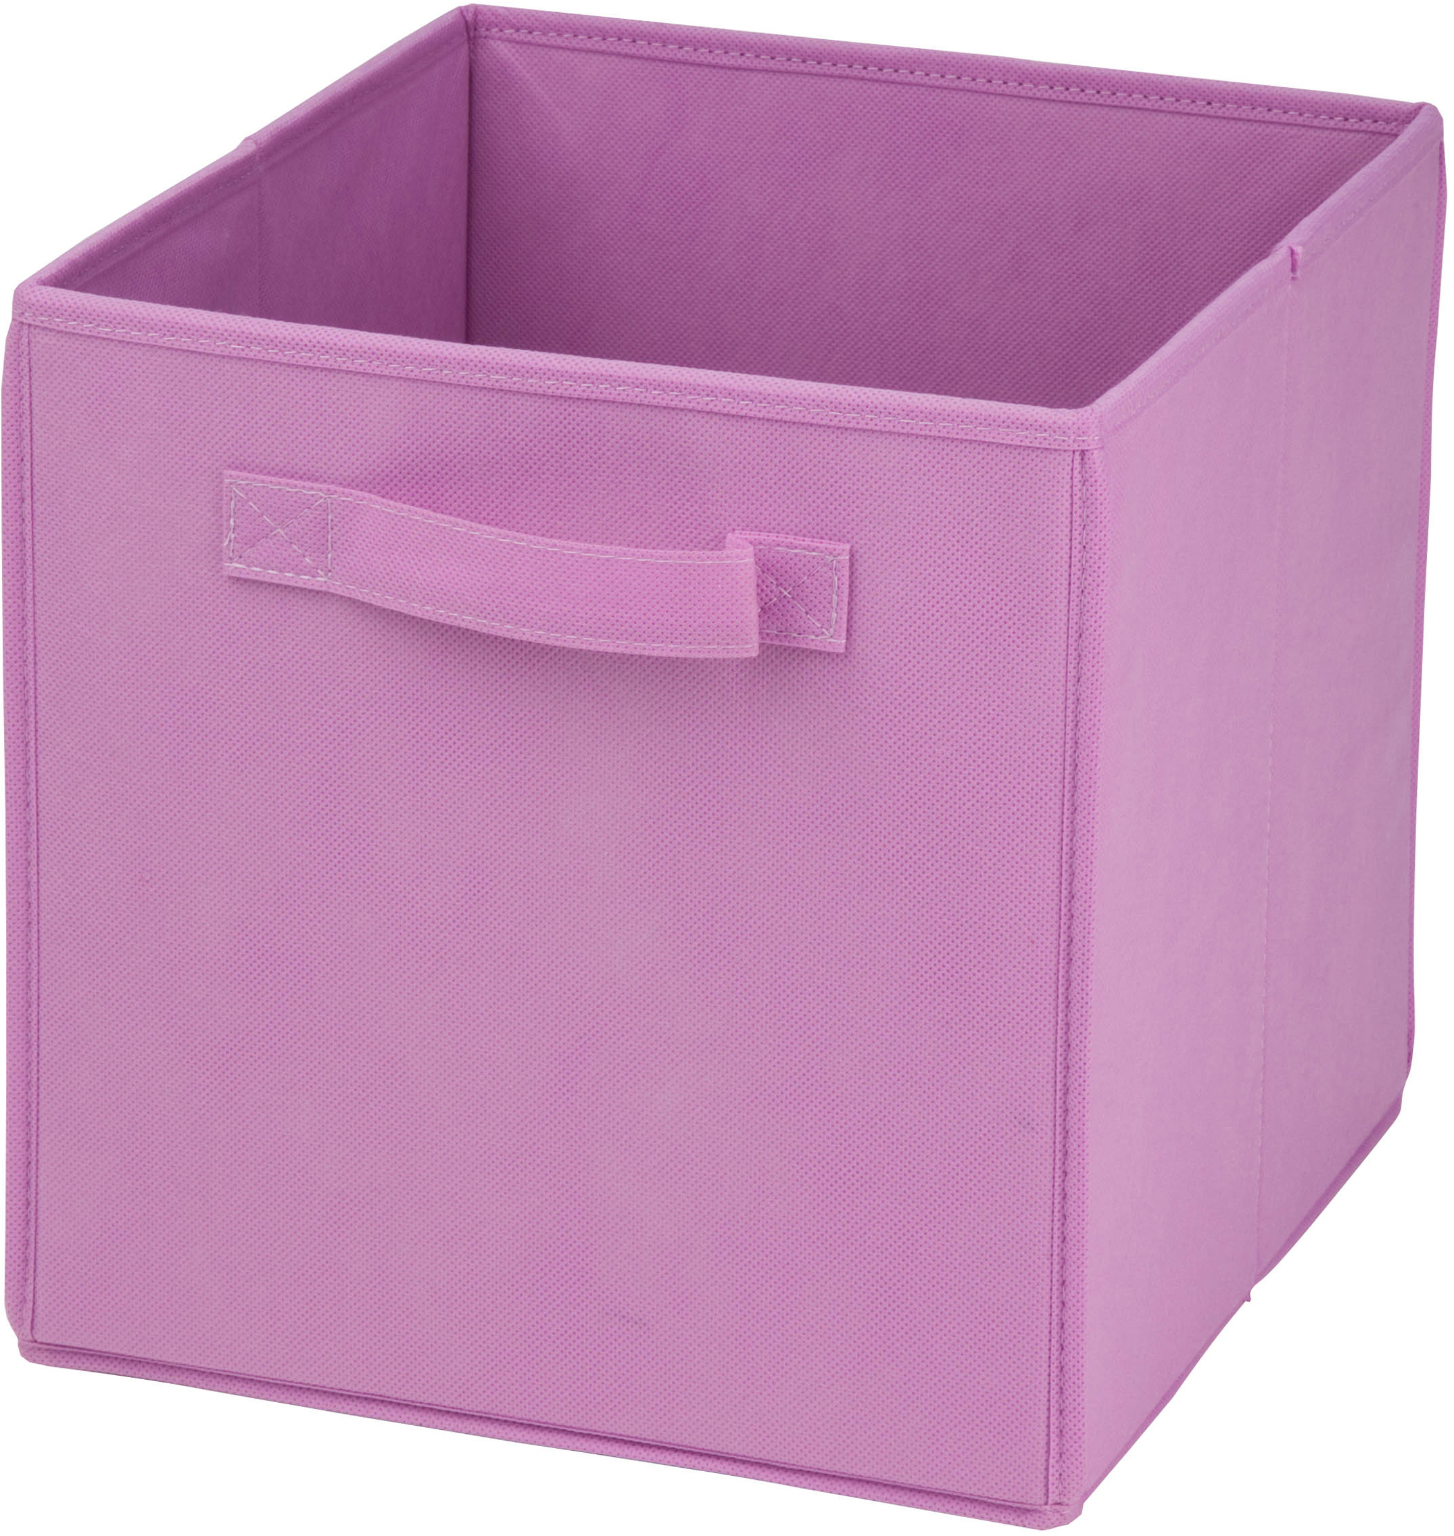 Wholesale Folding Storage Cube 10.6